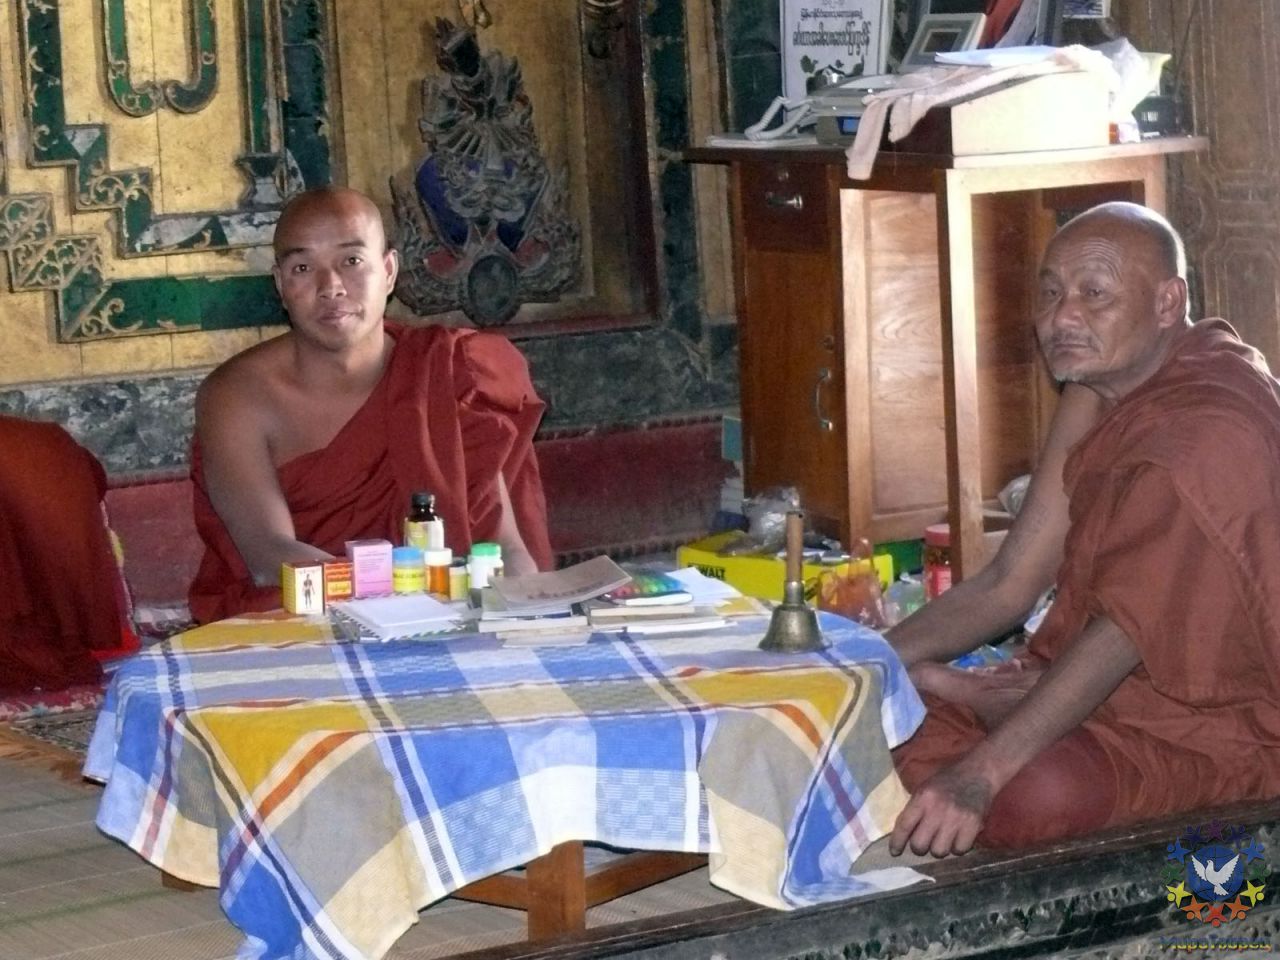 монахи - Мьянма 2011 (виды, природа, лица) II часть